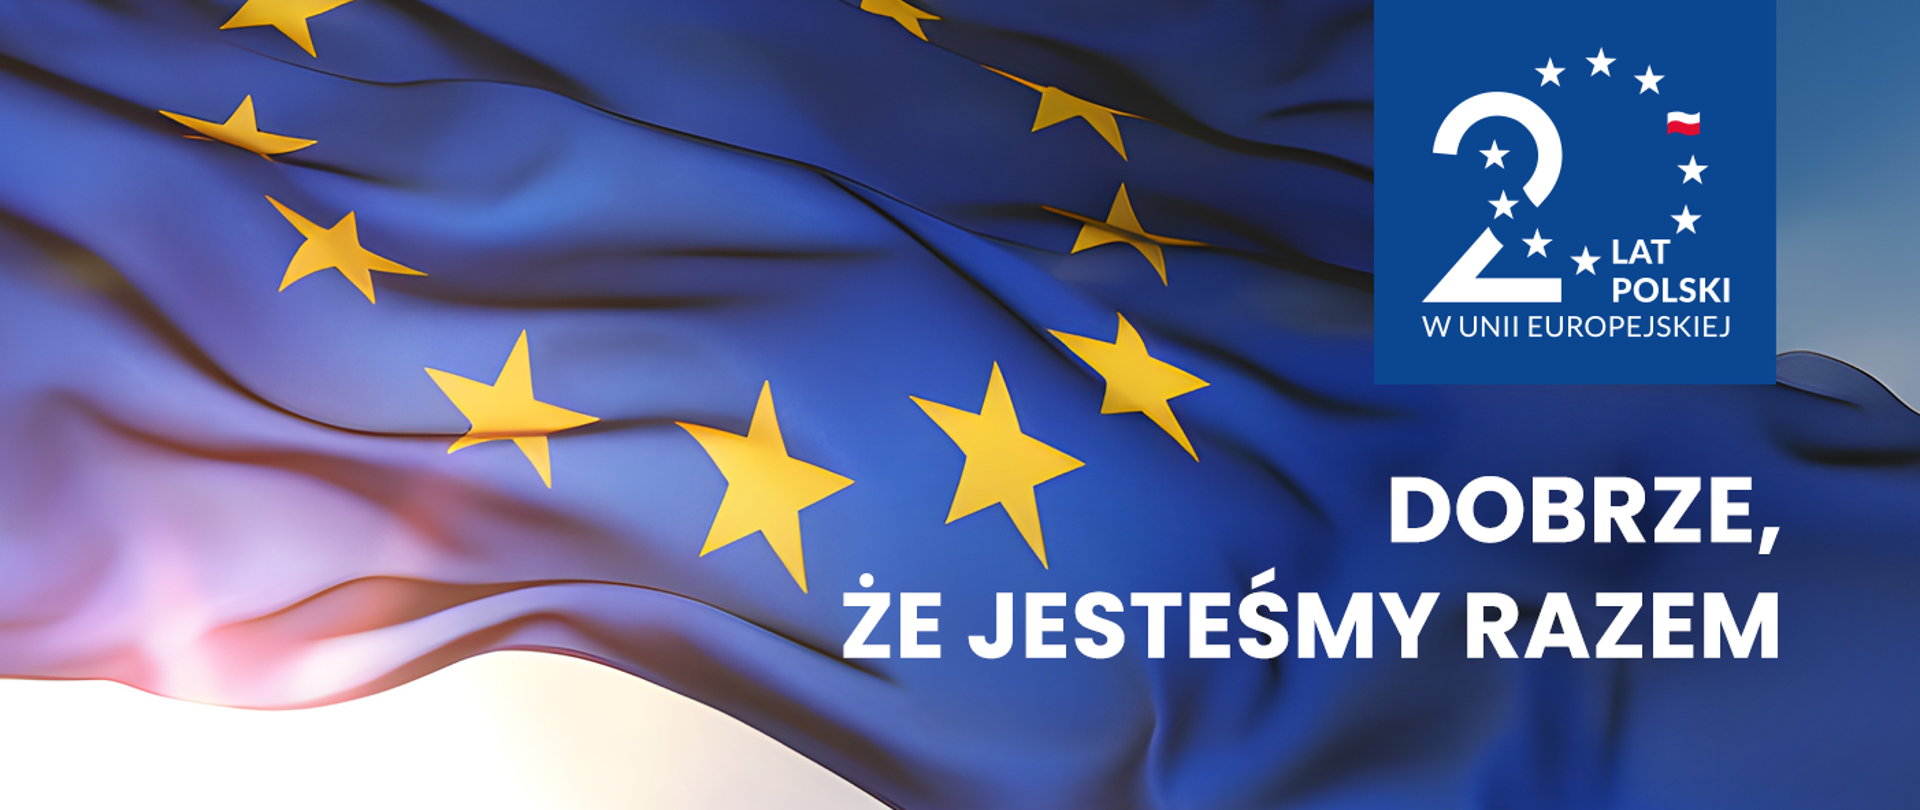 Świętujemy 20 lat Polski w Unii Europejskiej